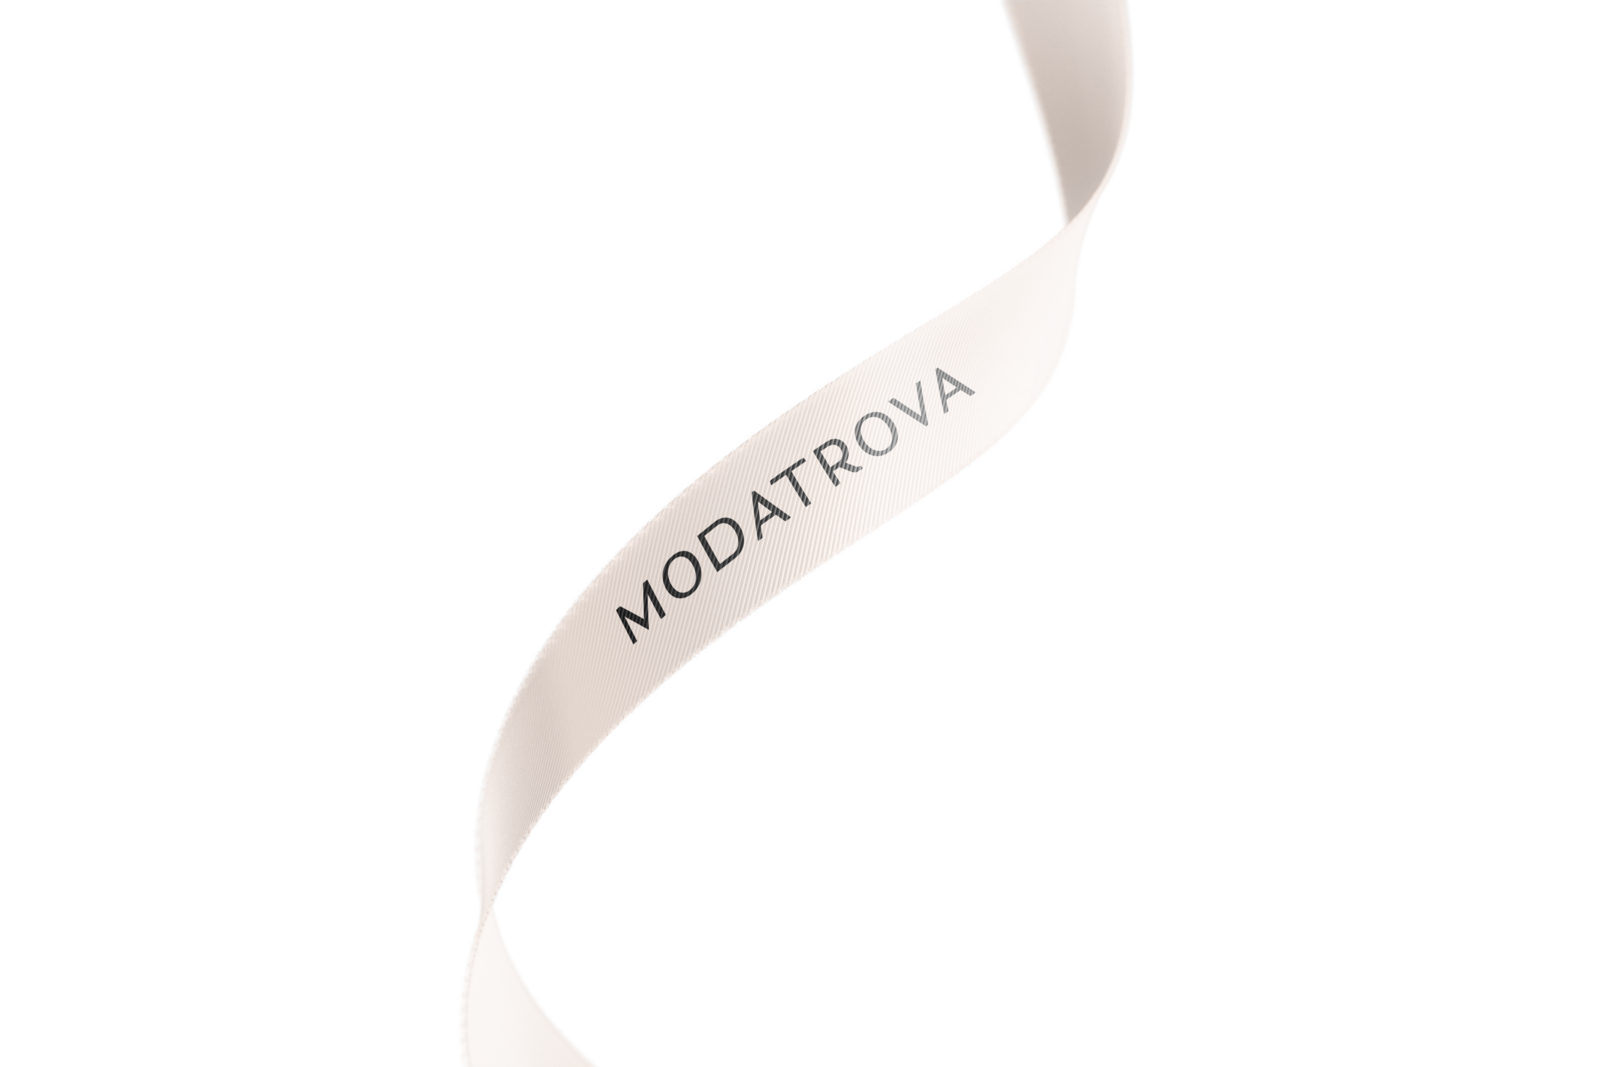 Peach colored ribbon with black Modatrova logo in center